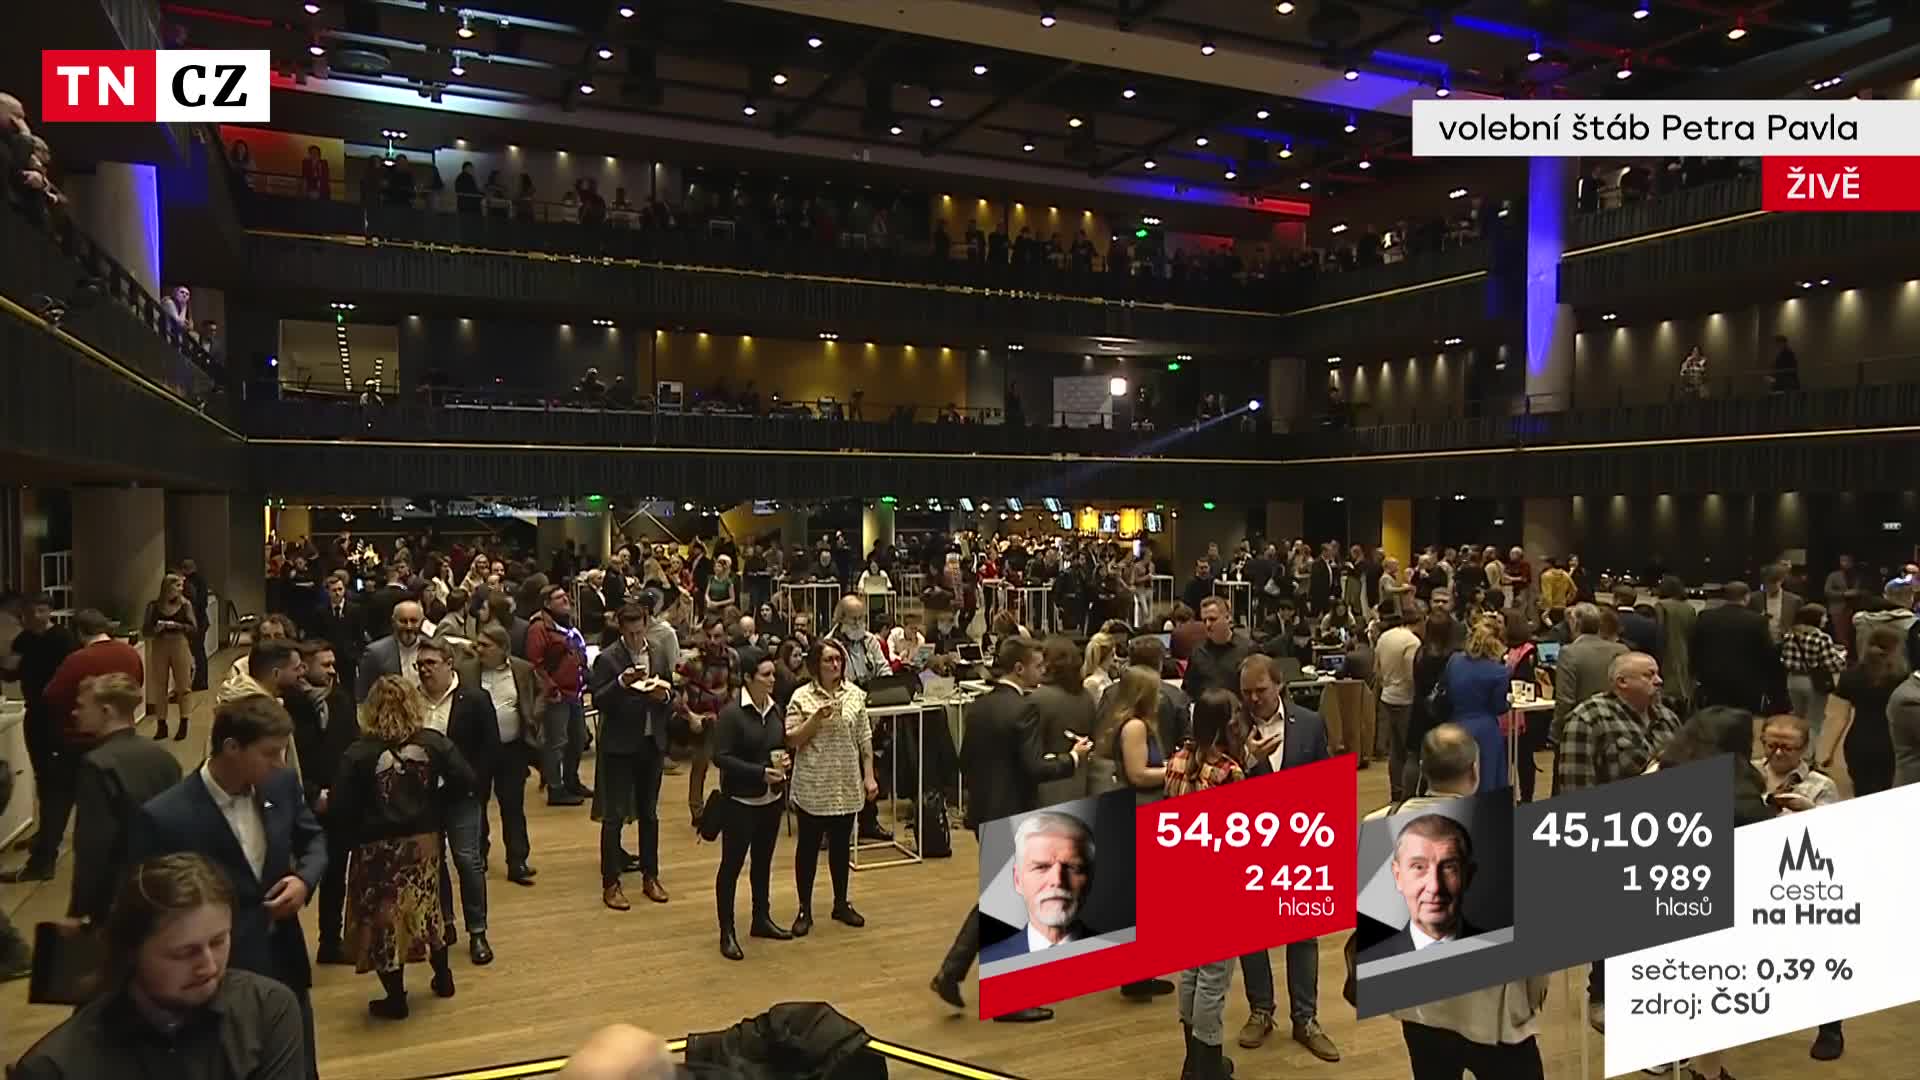 Reportéři TV Nova popsali, jak to vypadá ve volebních štábech po ukončení hlasování